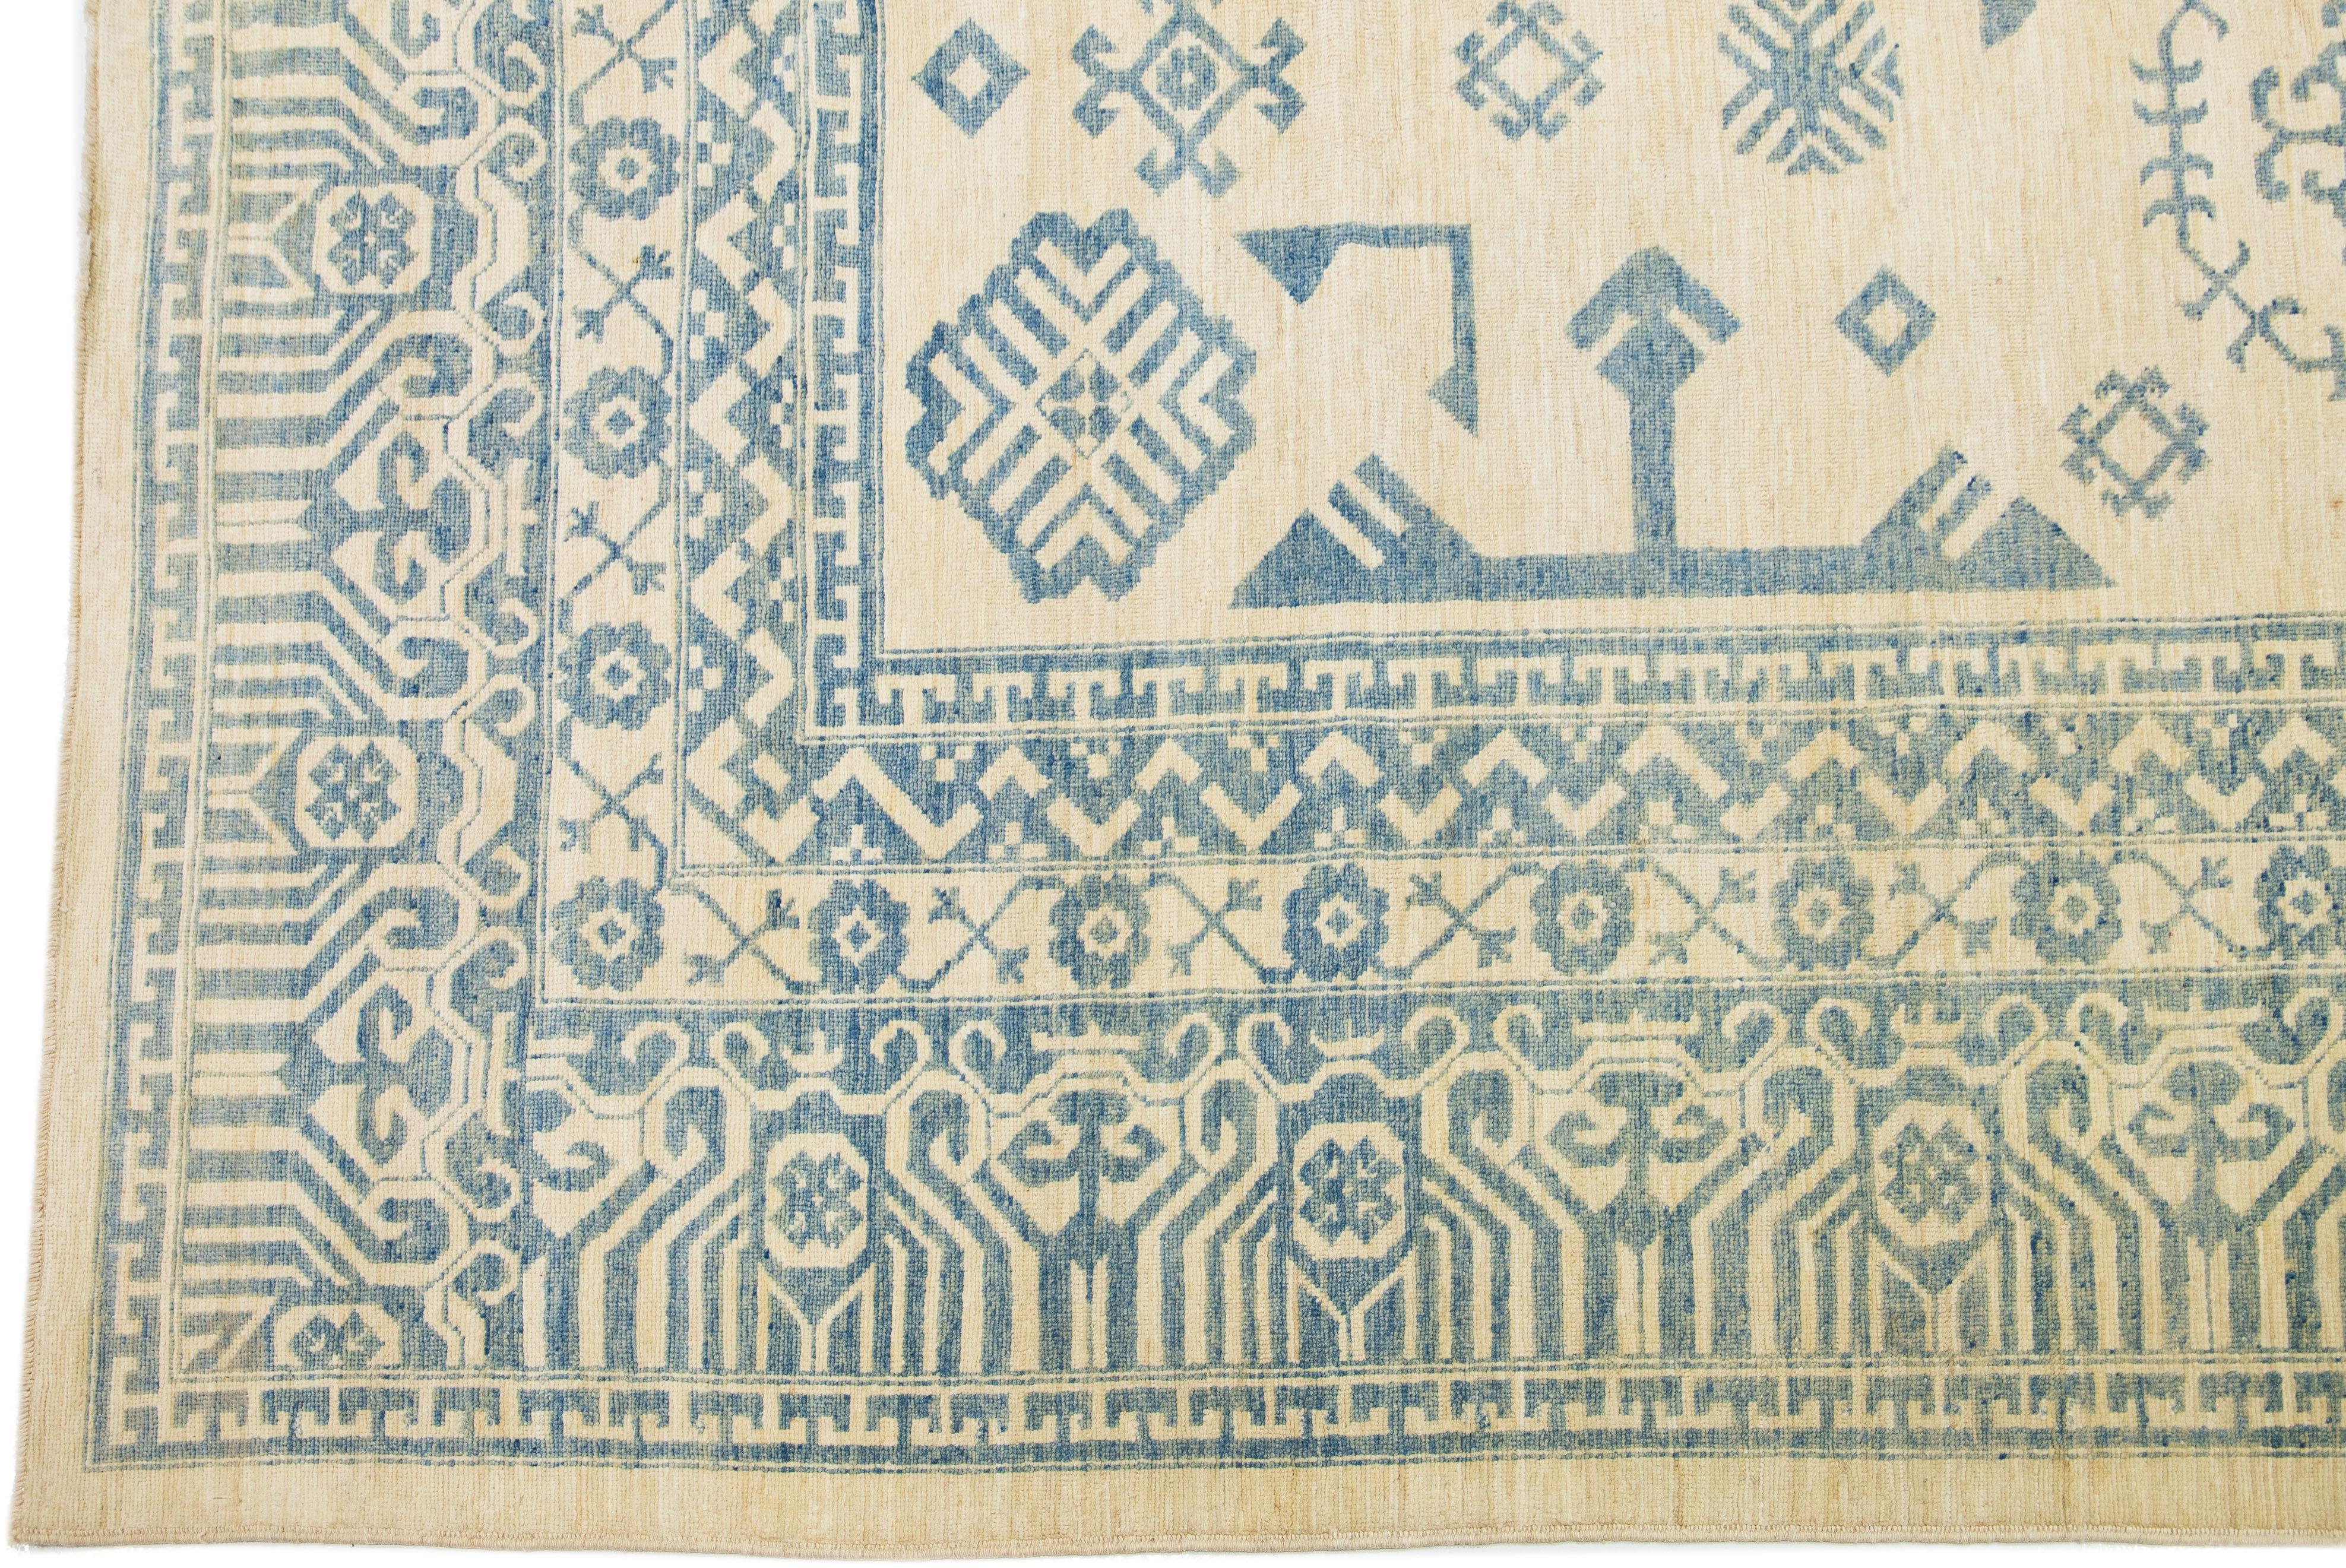 Schöne Moderne Khotan handgeknüpfte Wolle beige Feld. Dieser Khotan-Teppich hat einen wunderschön gestalteten Rahmen und blaue Akzente in einem herrlichen geometrischen All-Over-Muster.

Dieser Teppich misst 13'1 